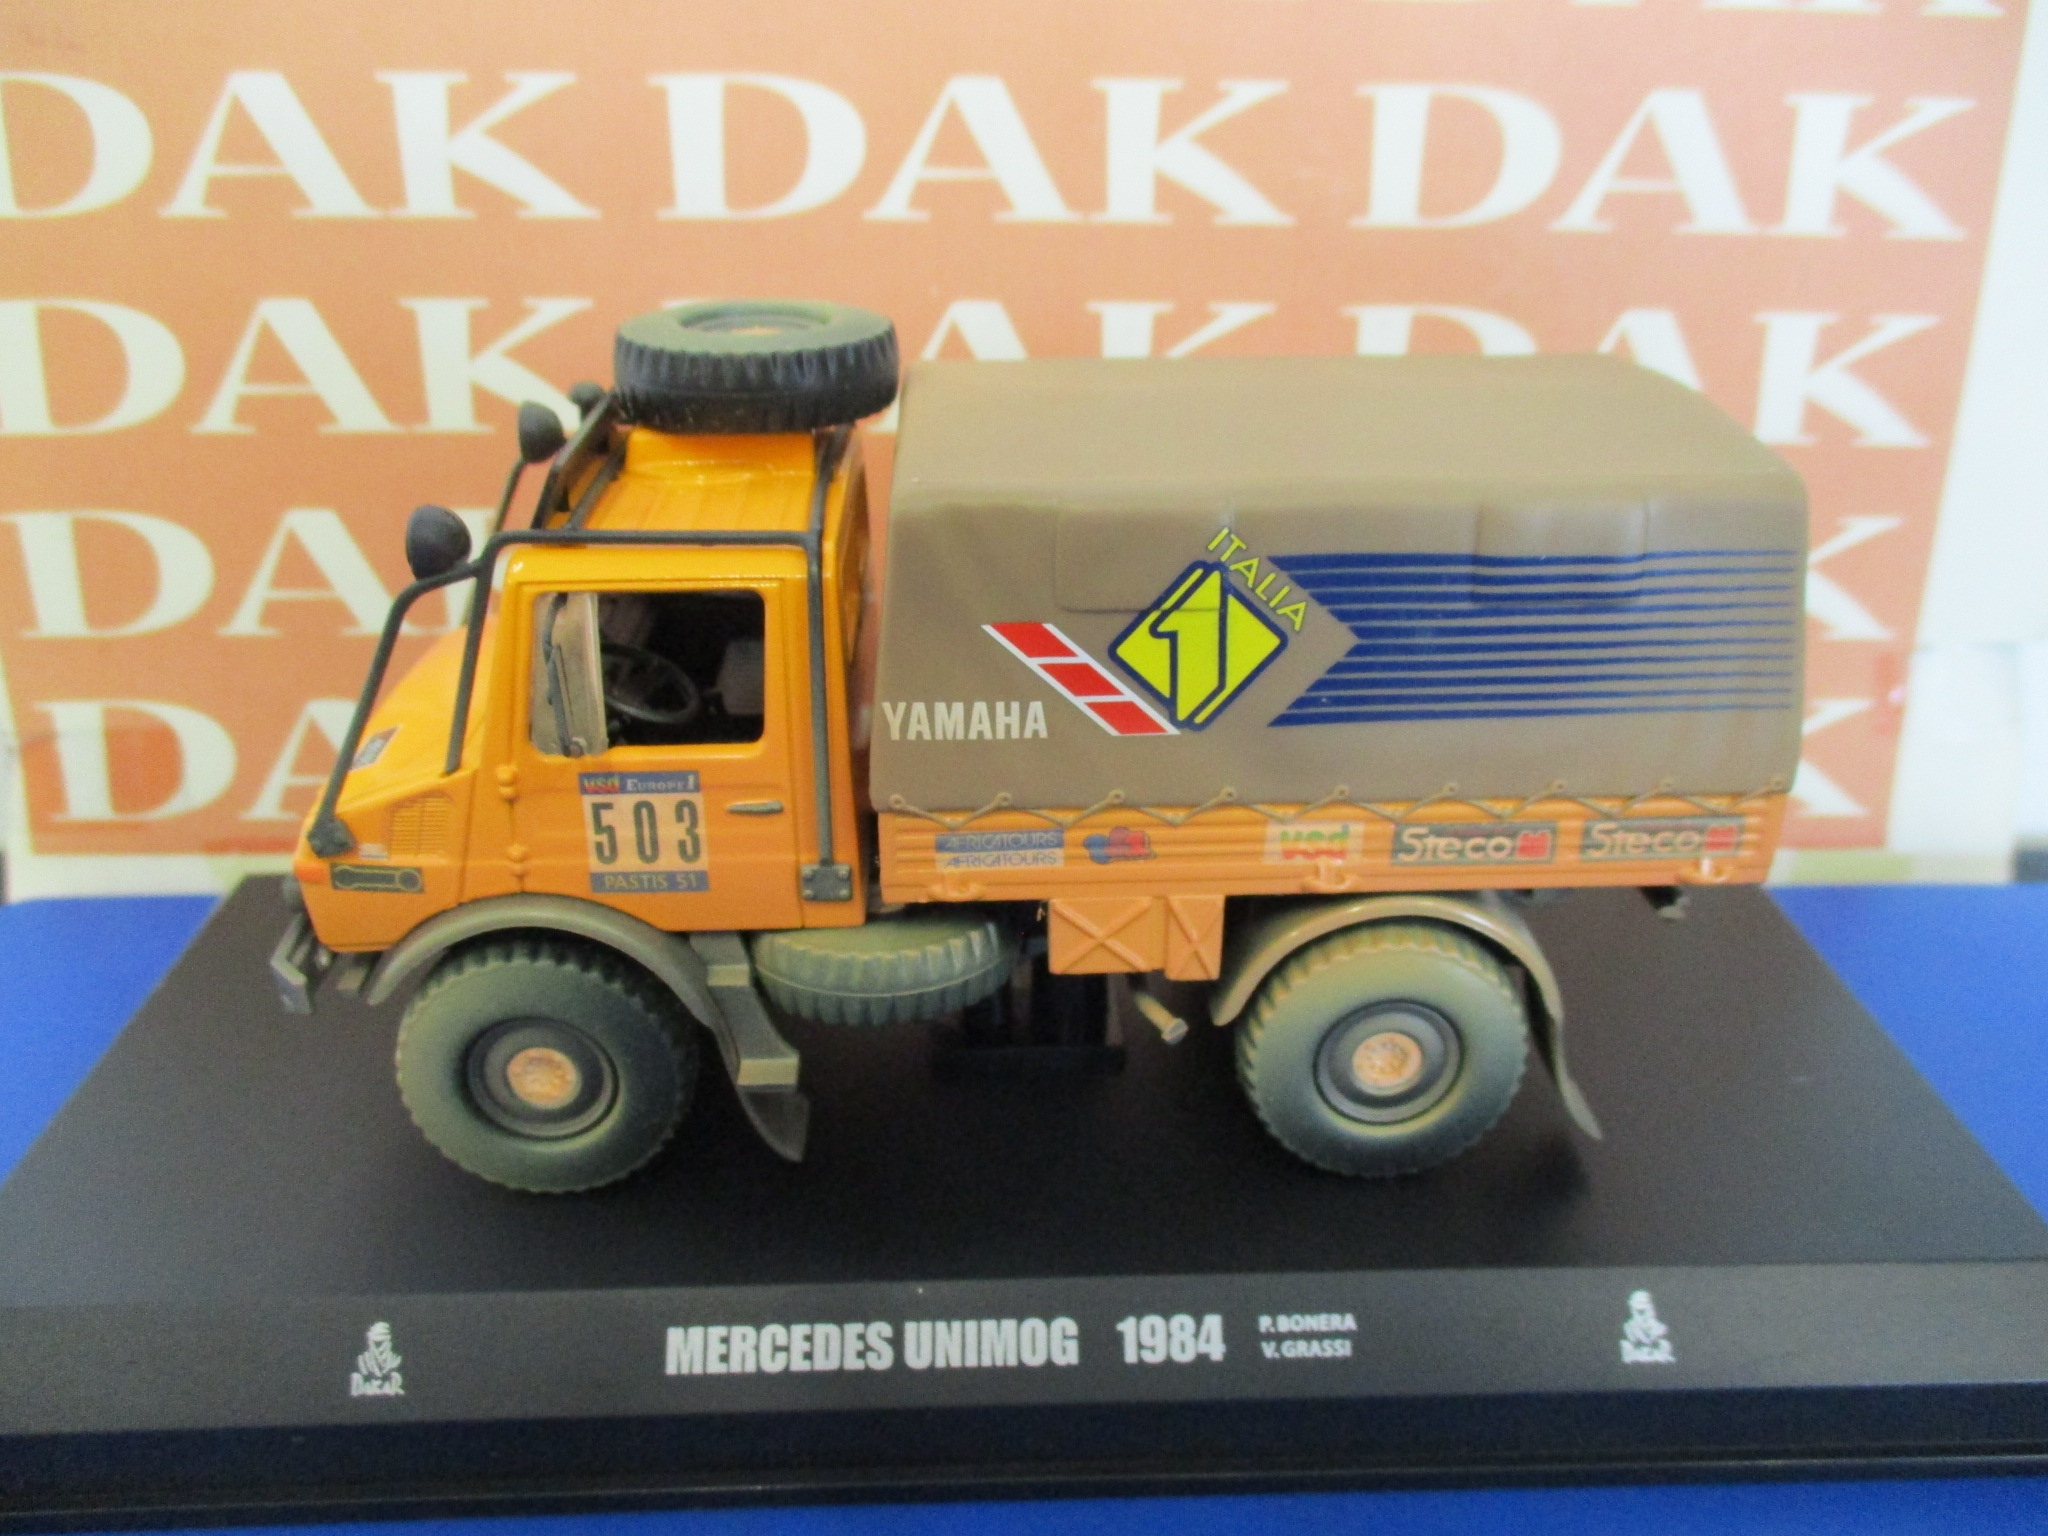 Die cast 1/43 Modellino Camion Truck Mercedes Unimog Paris-Dakar 1984